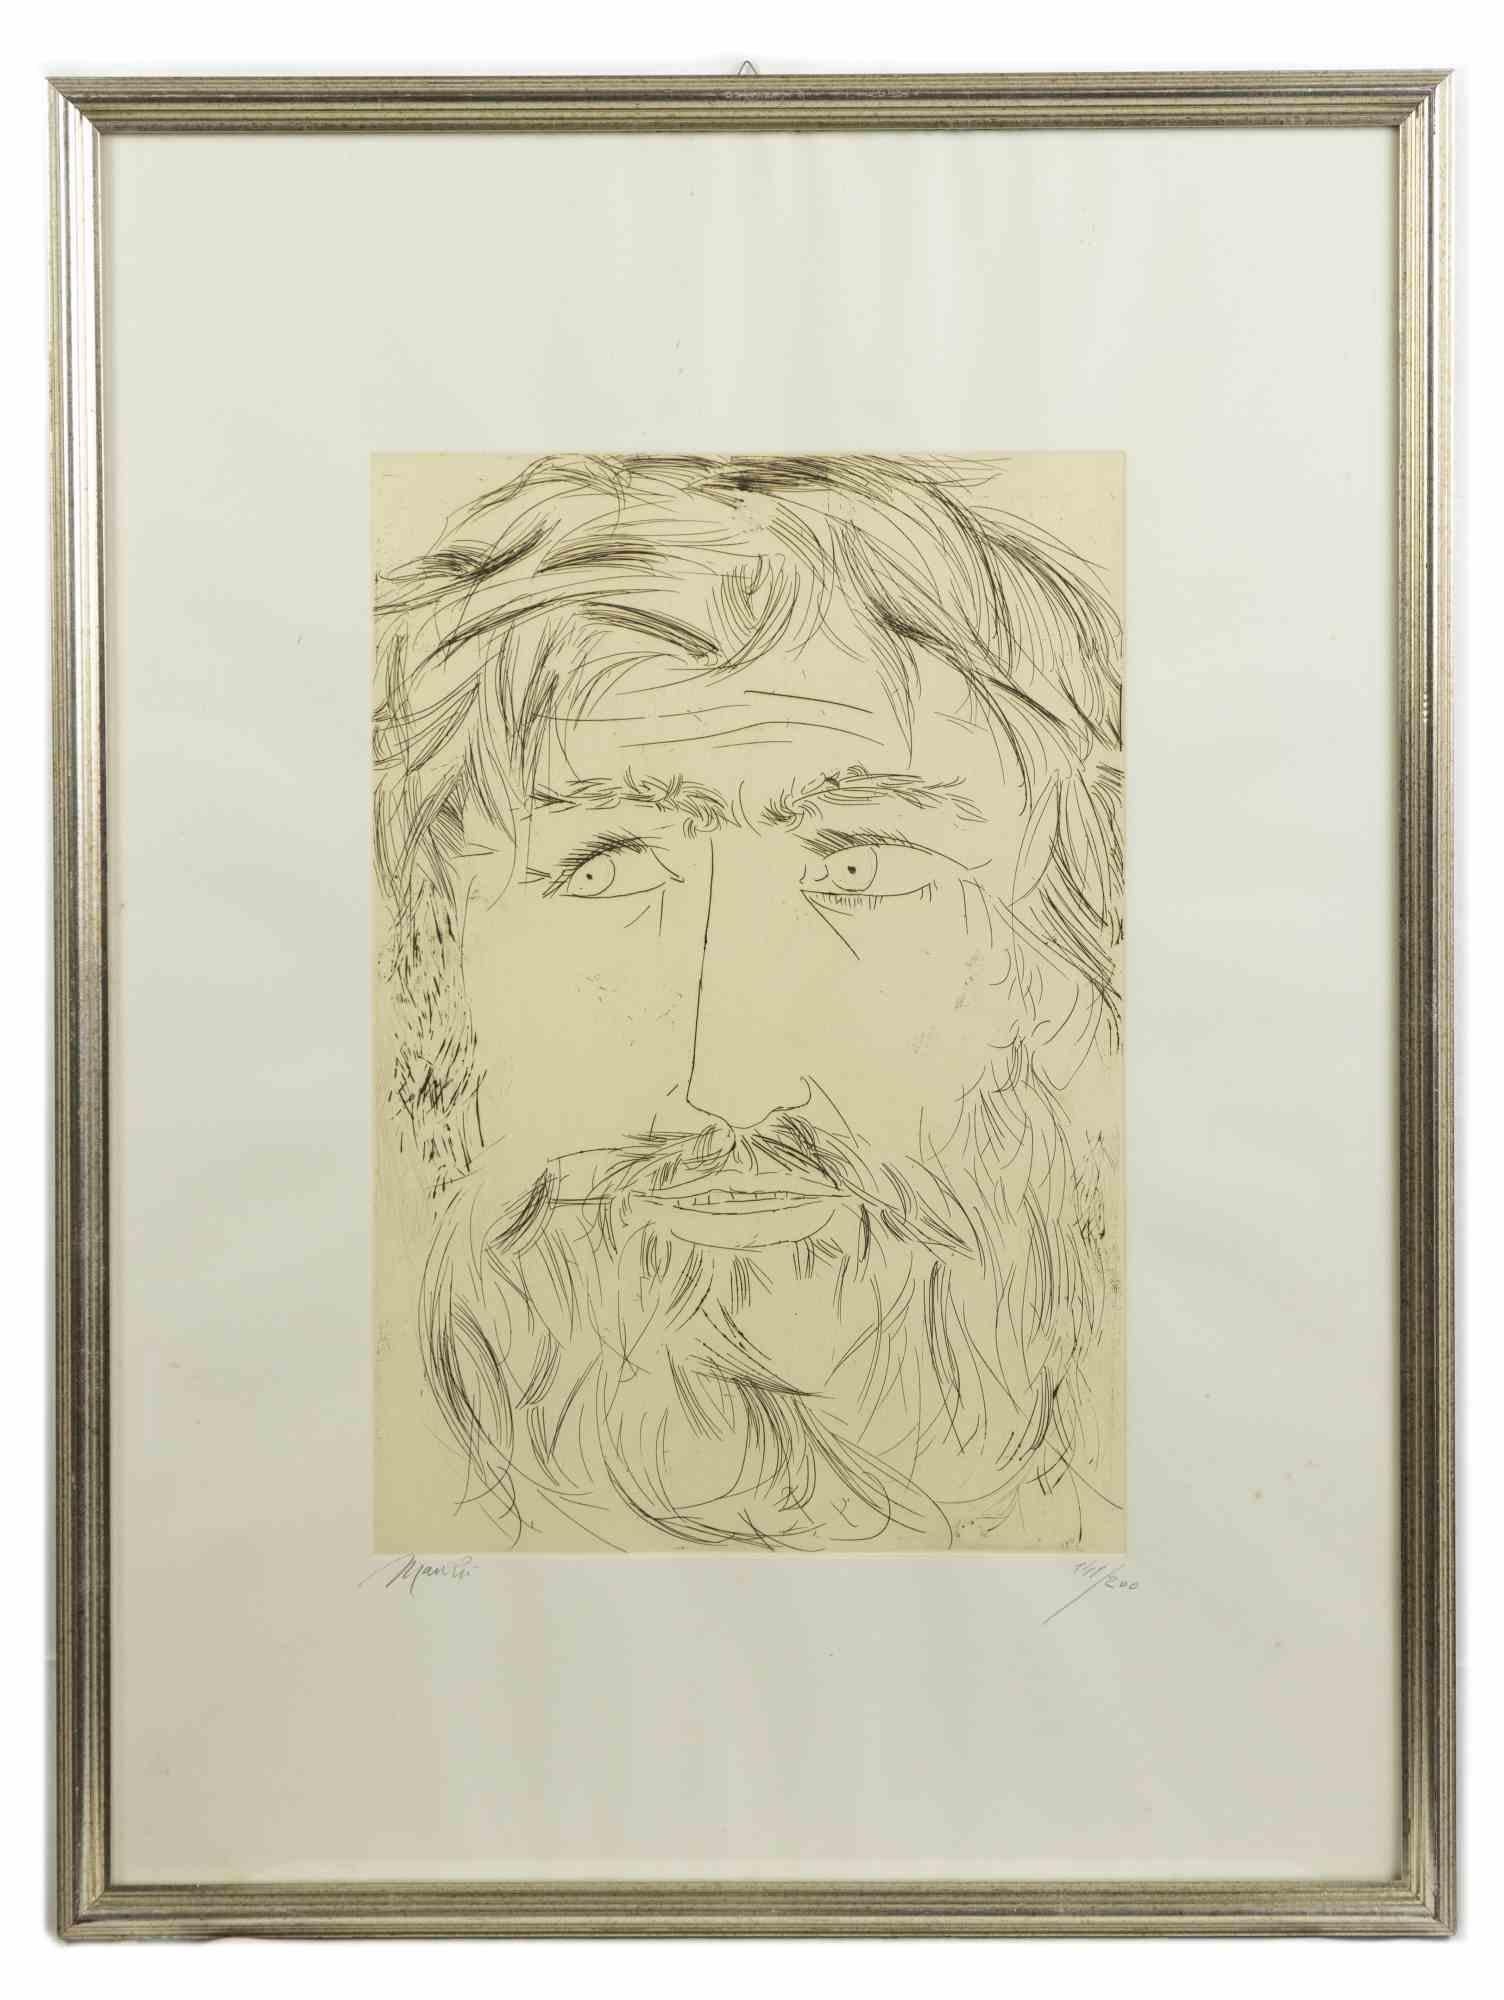 Hommage à Michel-Ange - Gravure de Giacomo Manzù - 1975 - Contemporain Print par Giacomo Manzú